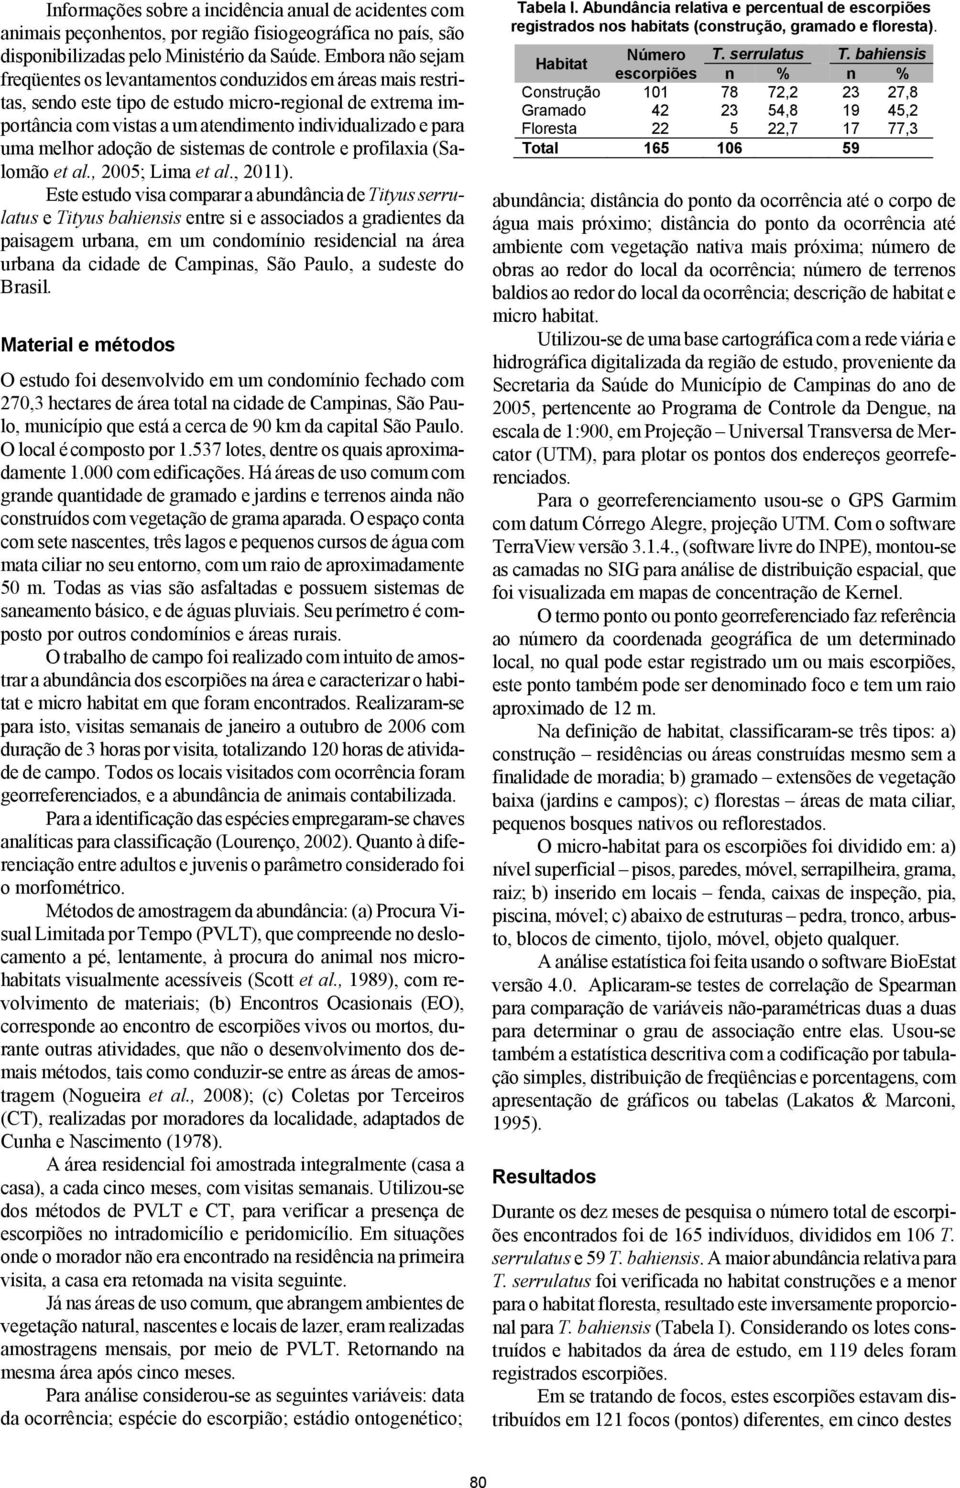 melhor adoção de sistemas de controle e profilaxia (Salomão et al., 2005; Lima et al., 2011).